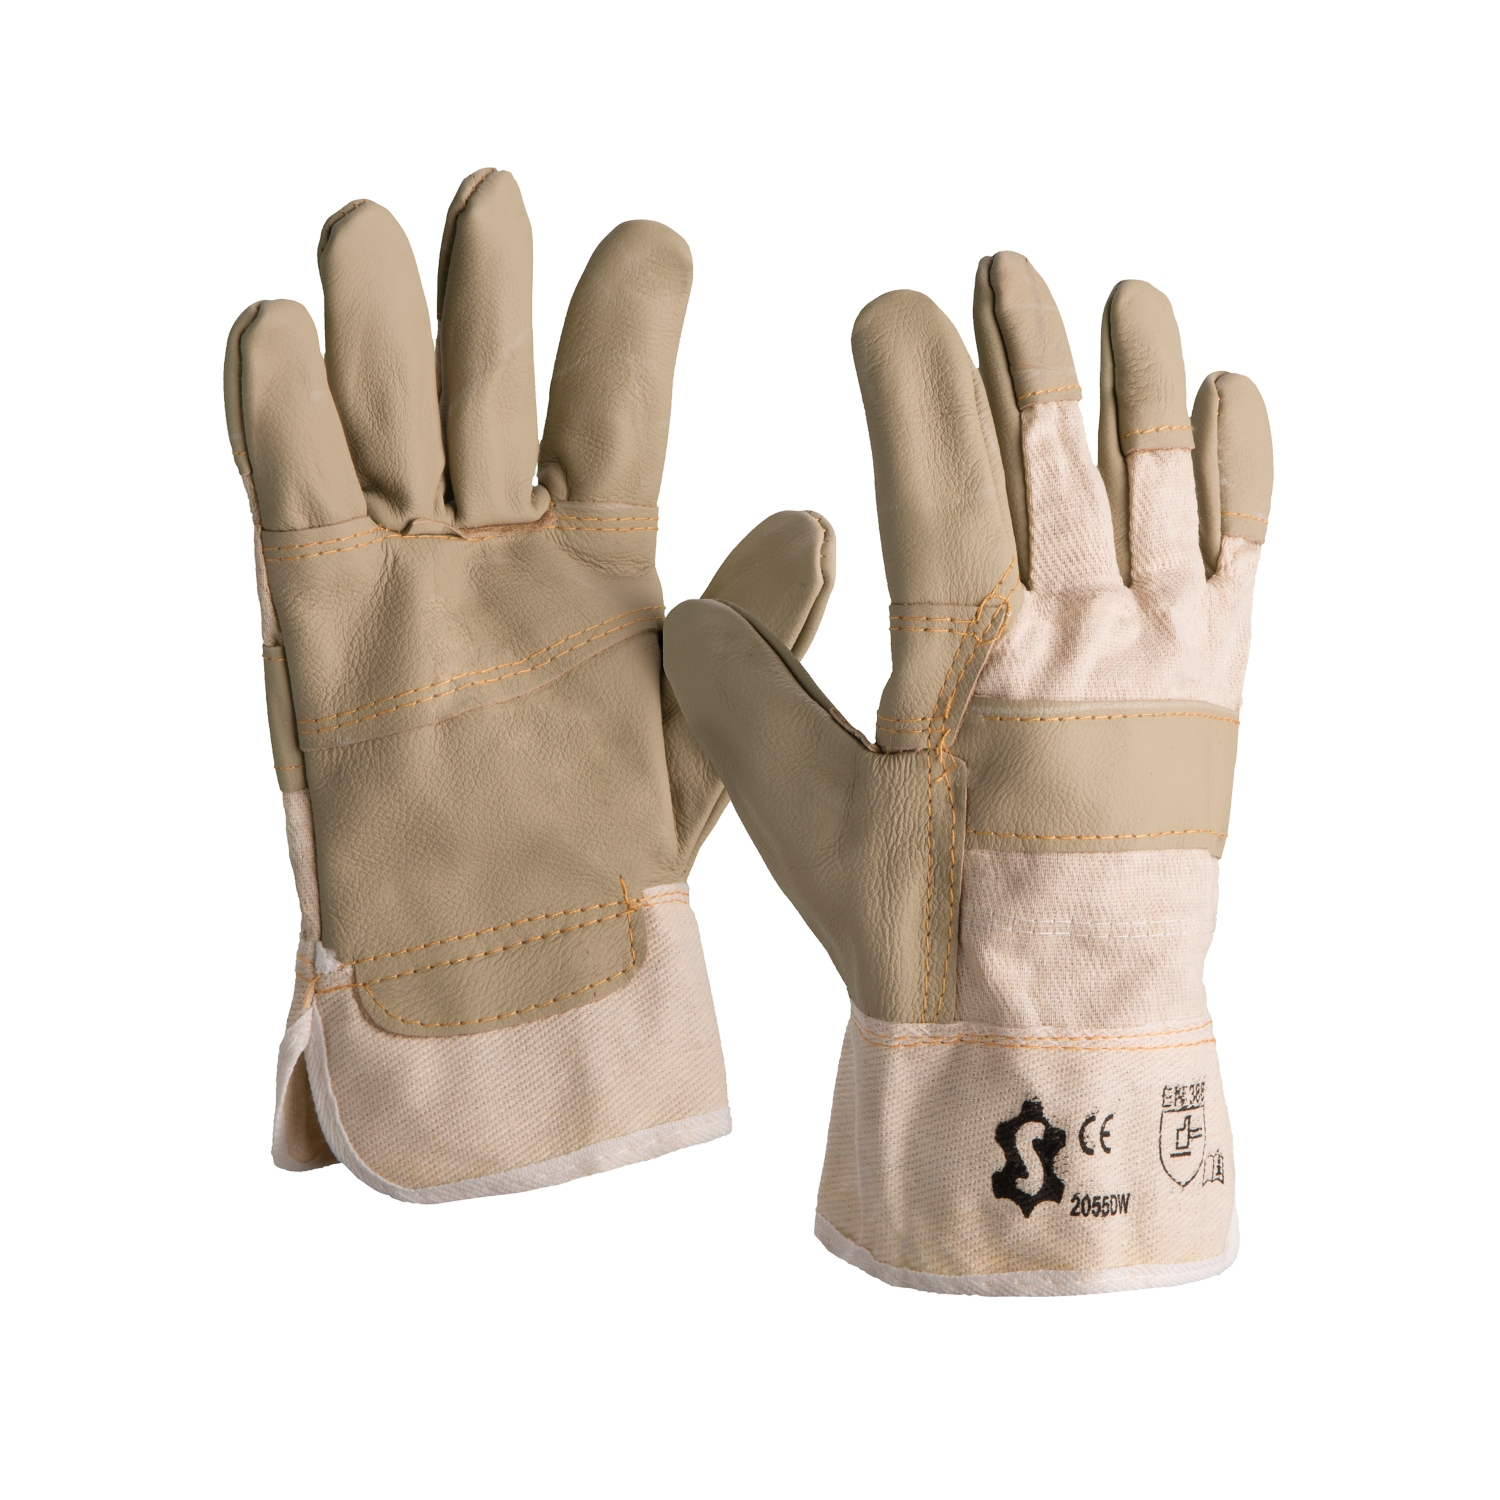 LYUMO 1 paire 2 couches de gants en cuir de travail des gants de